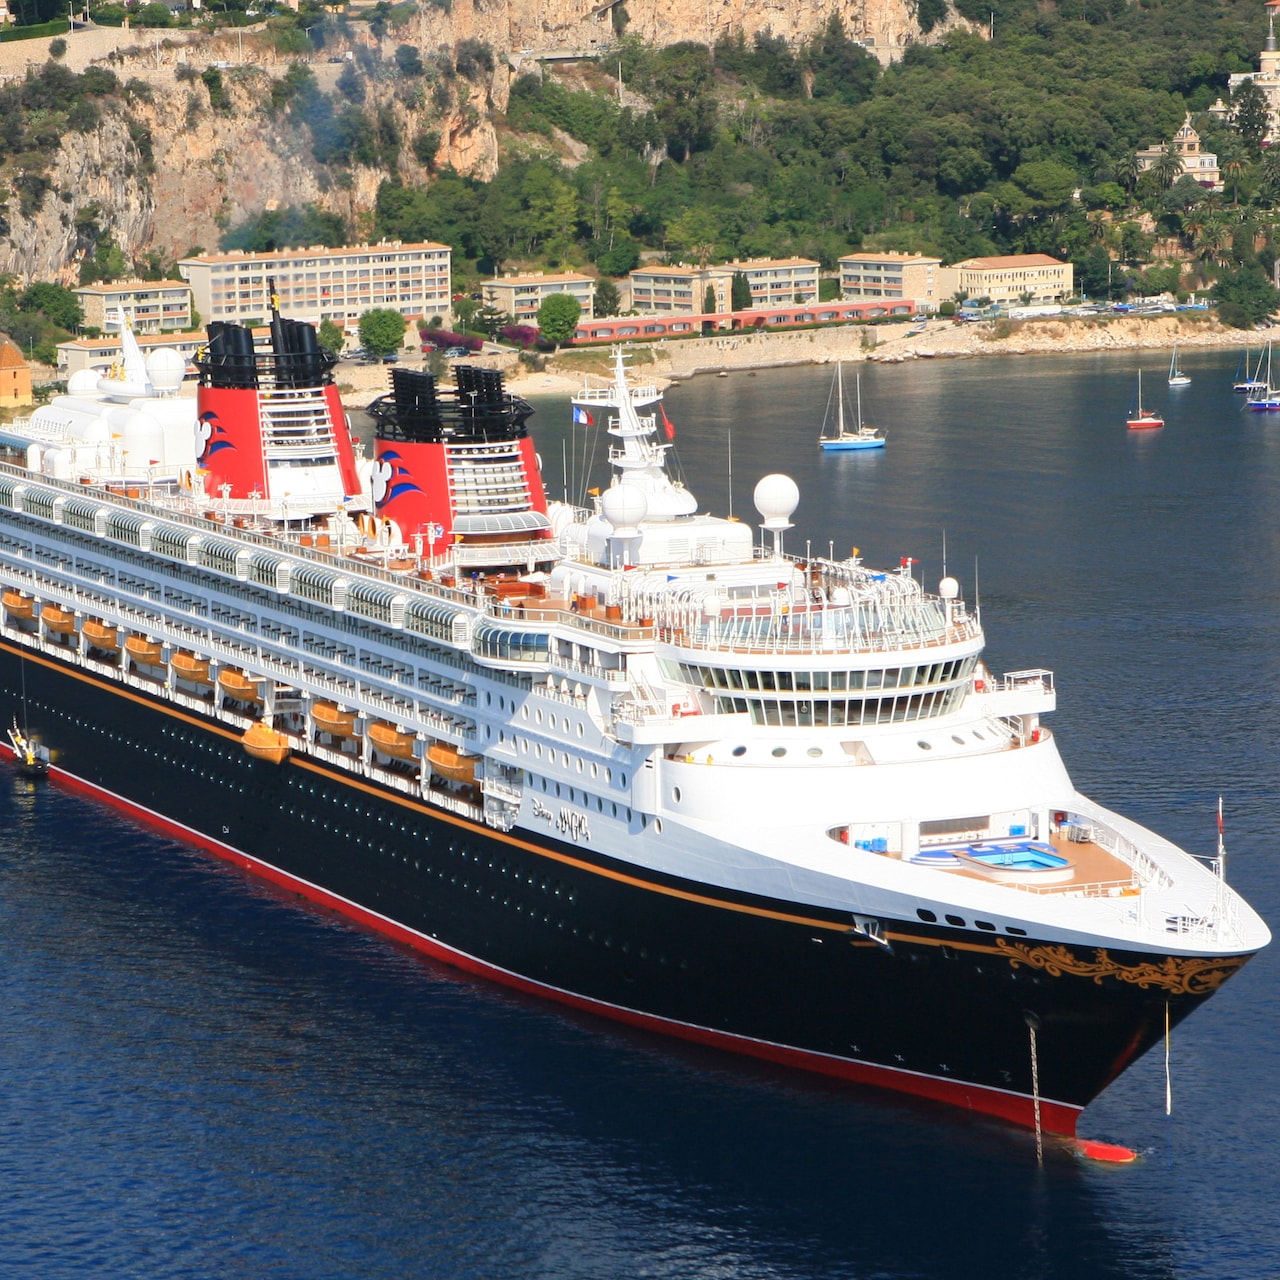 6 Night Mediterranean Cruise Adventures by Disney